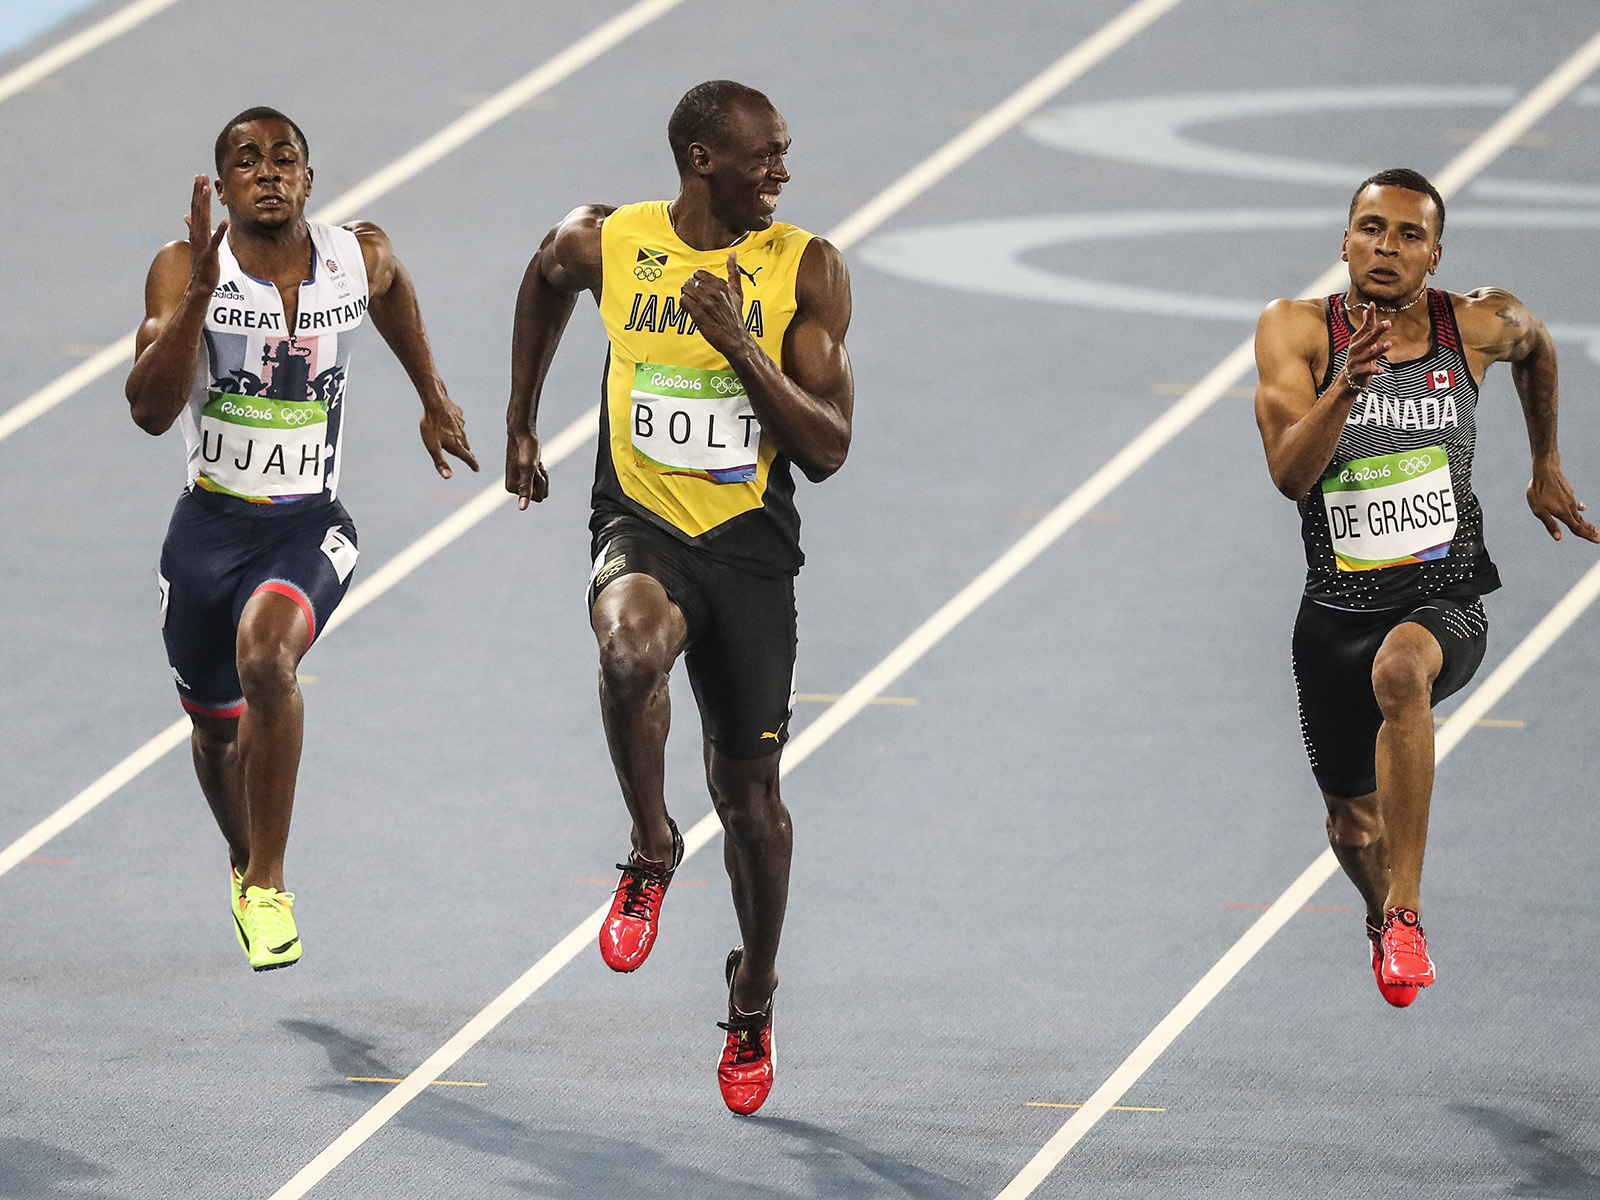 Stopama najbržeg: 10 inspirativnih izjava Usaina Bolta